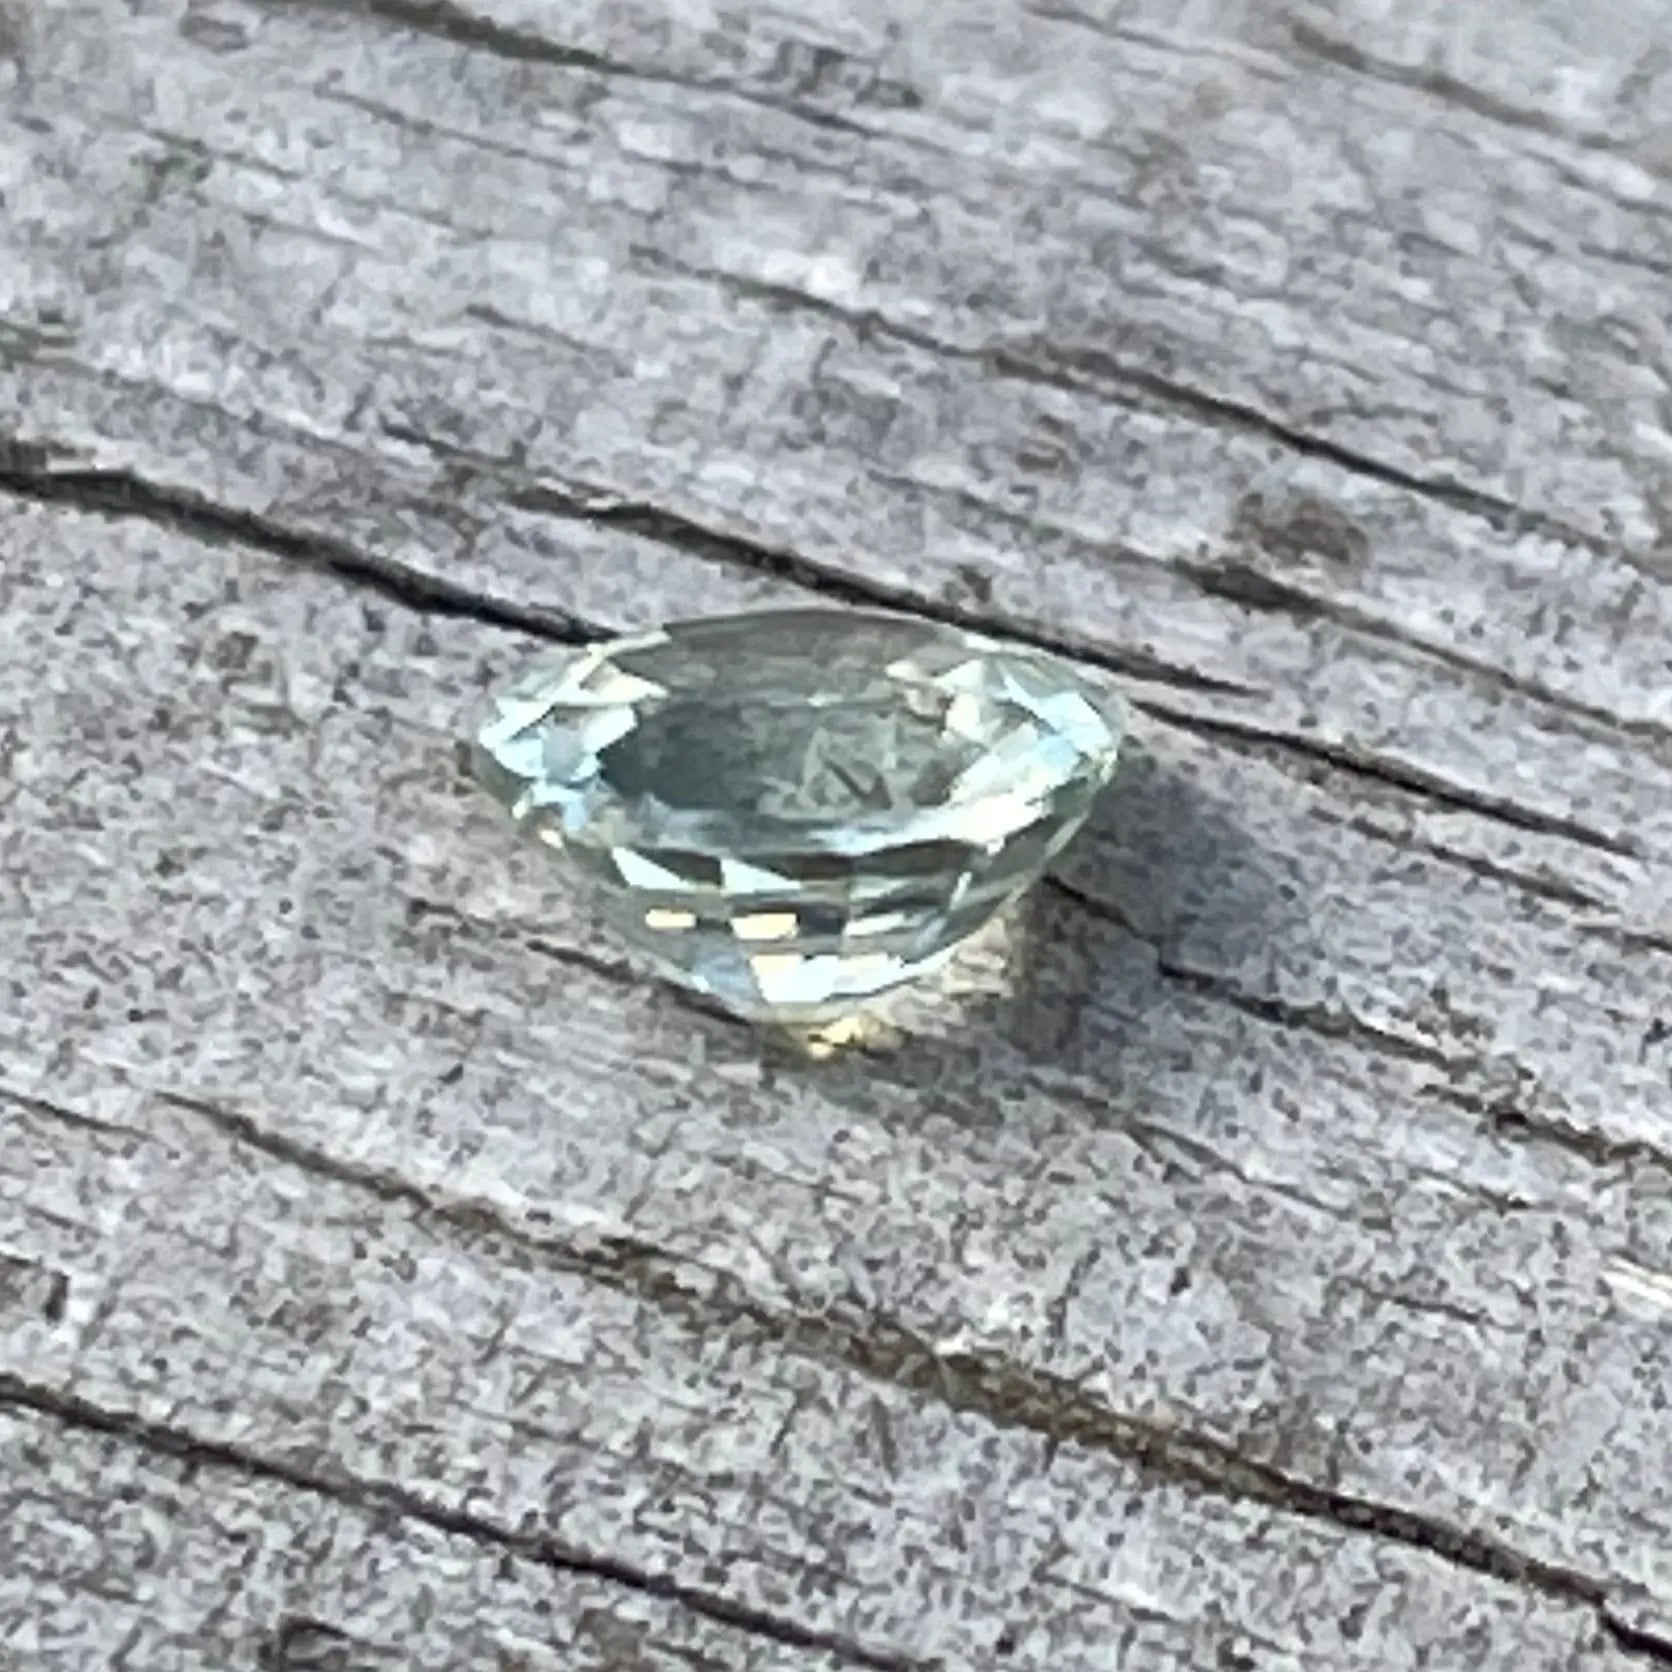 Natural Teal Sapphire gems-756e